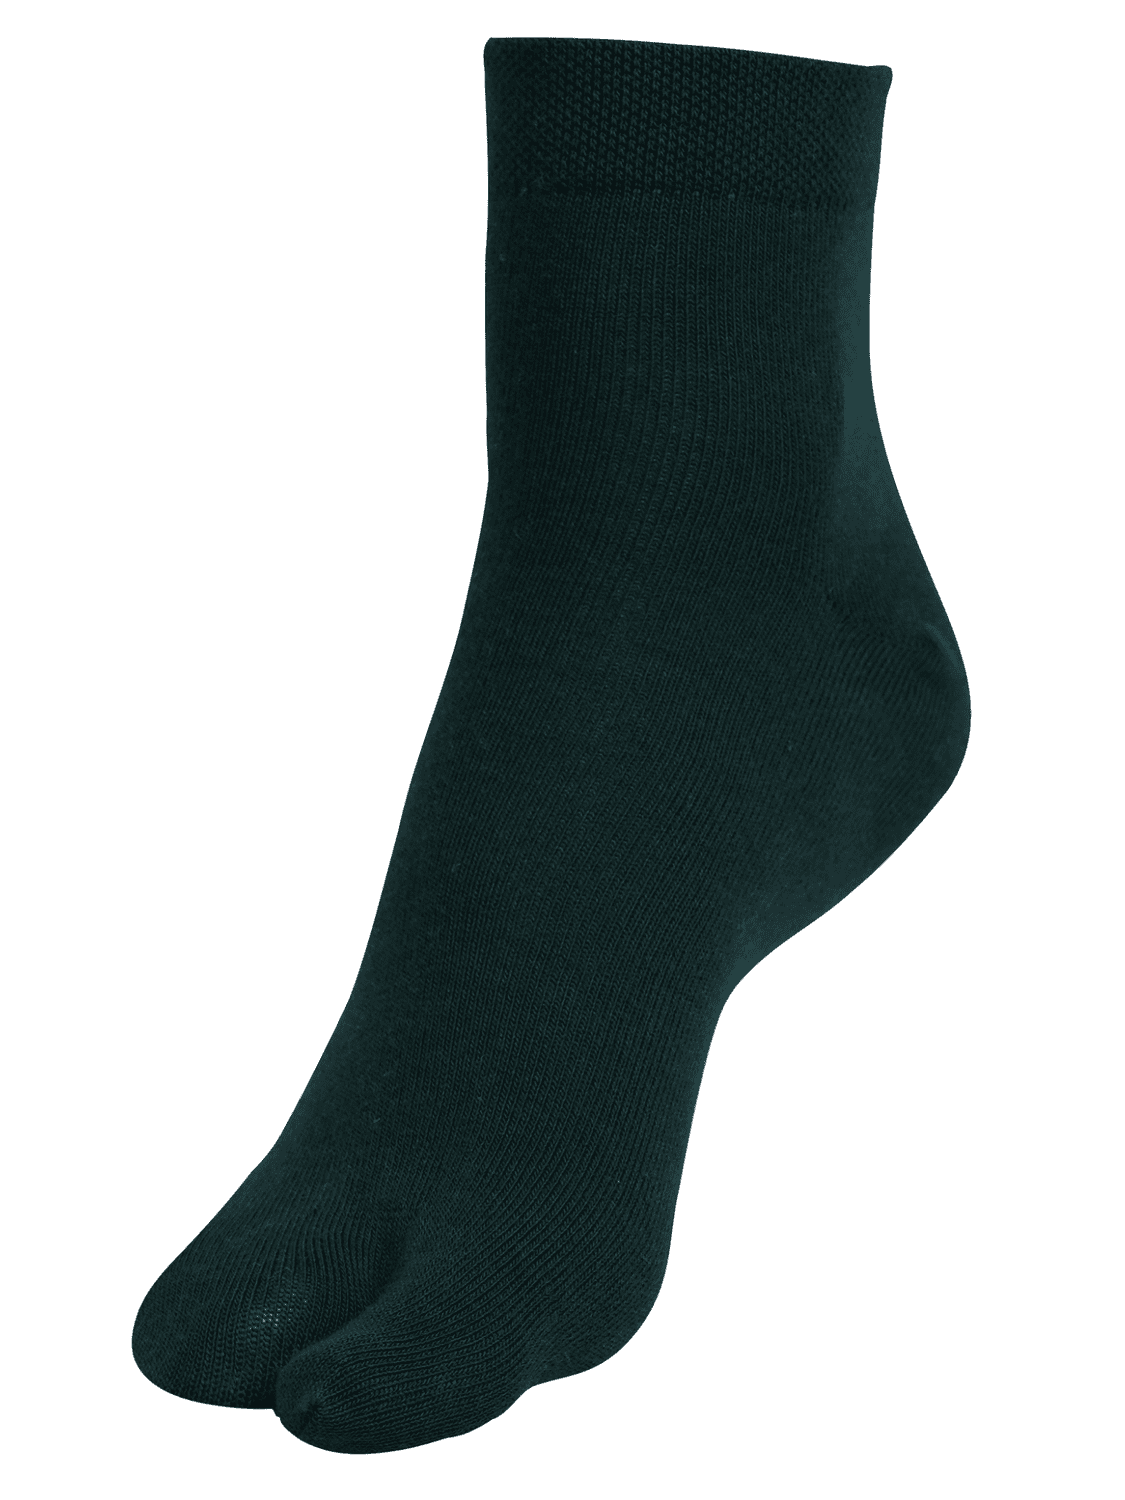 Ankle Thumb Socks - Bottle Green